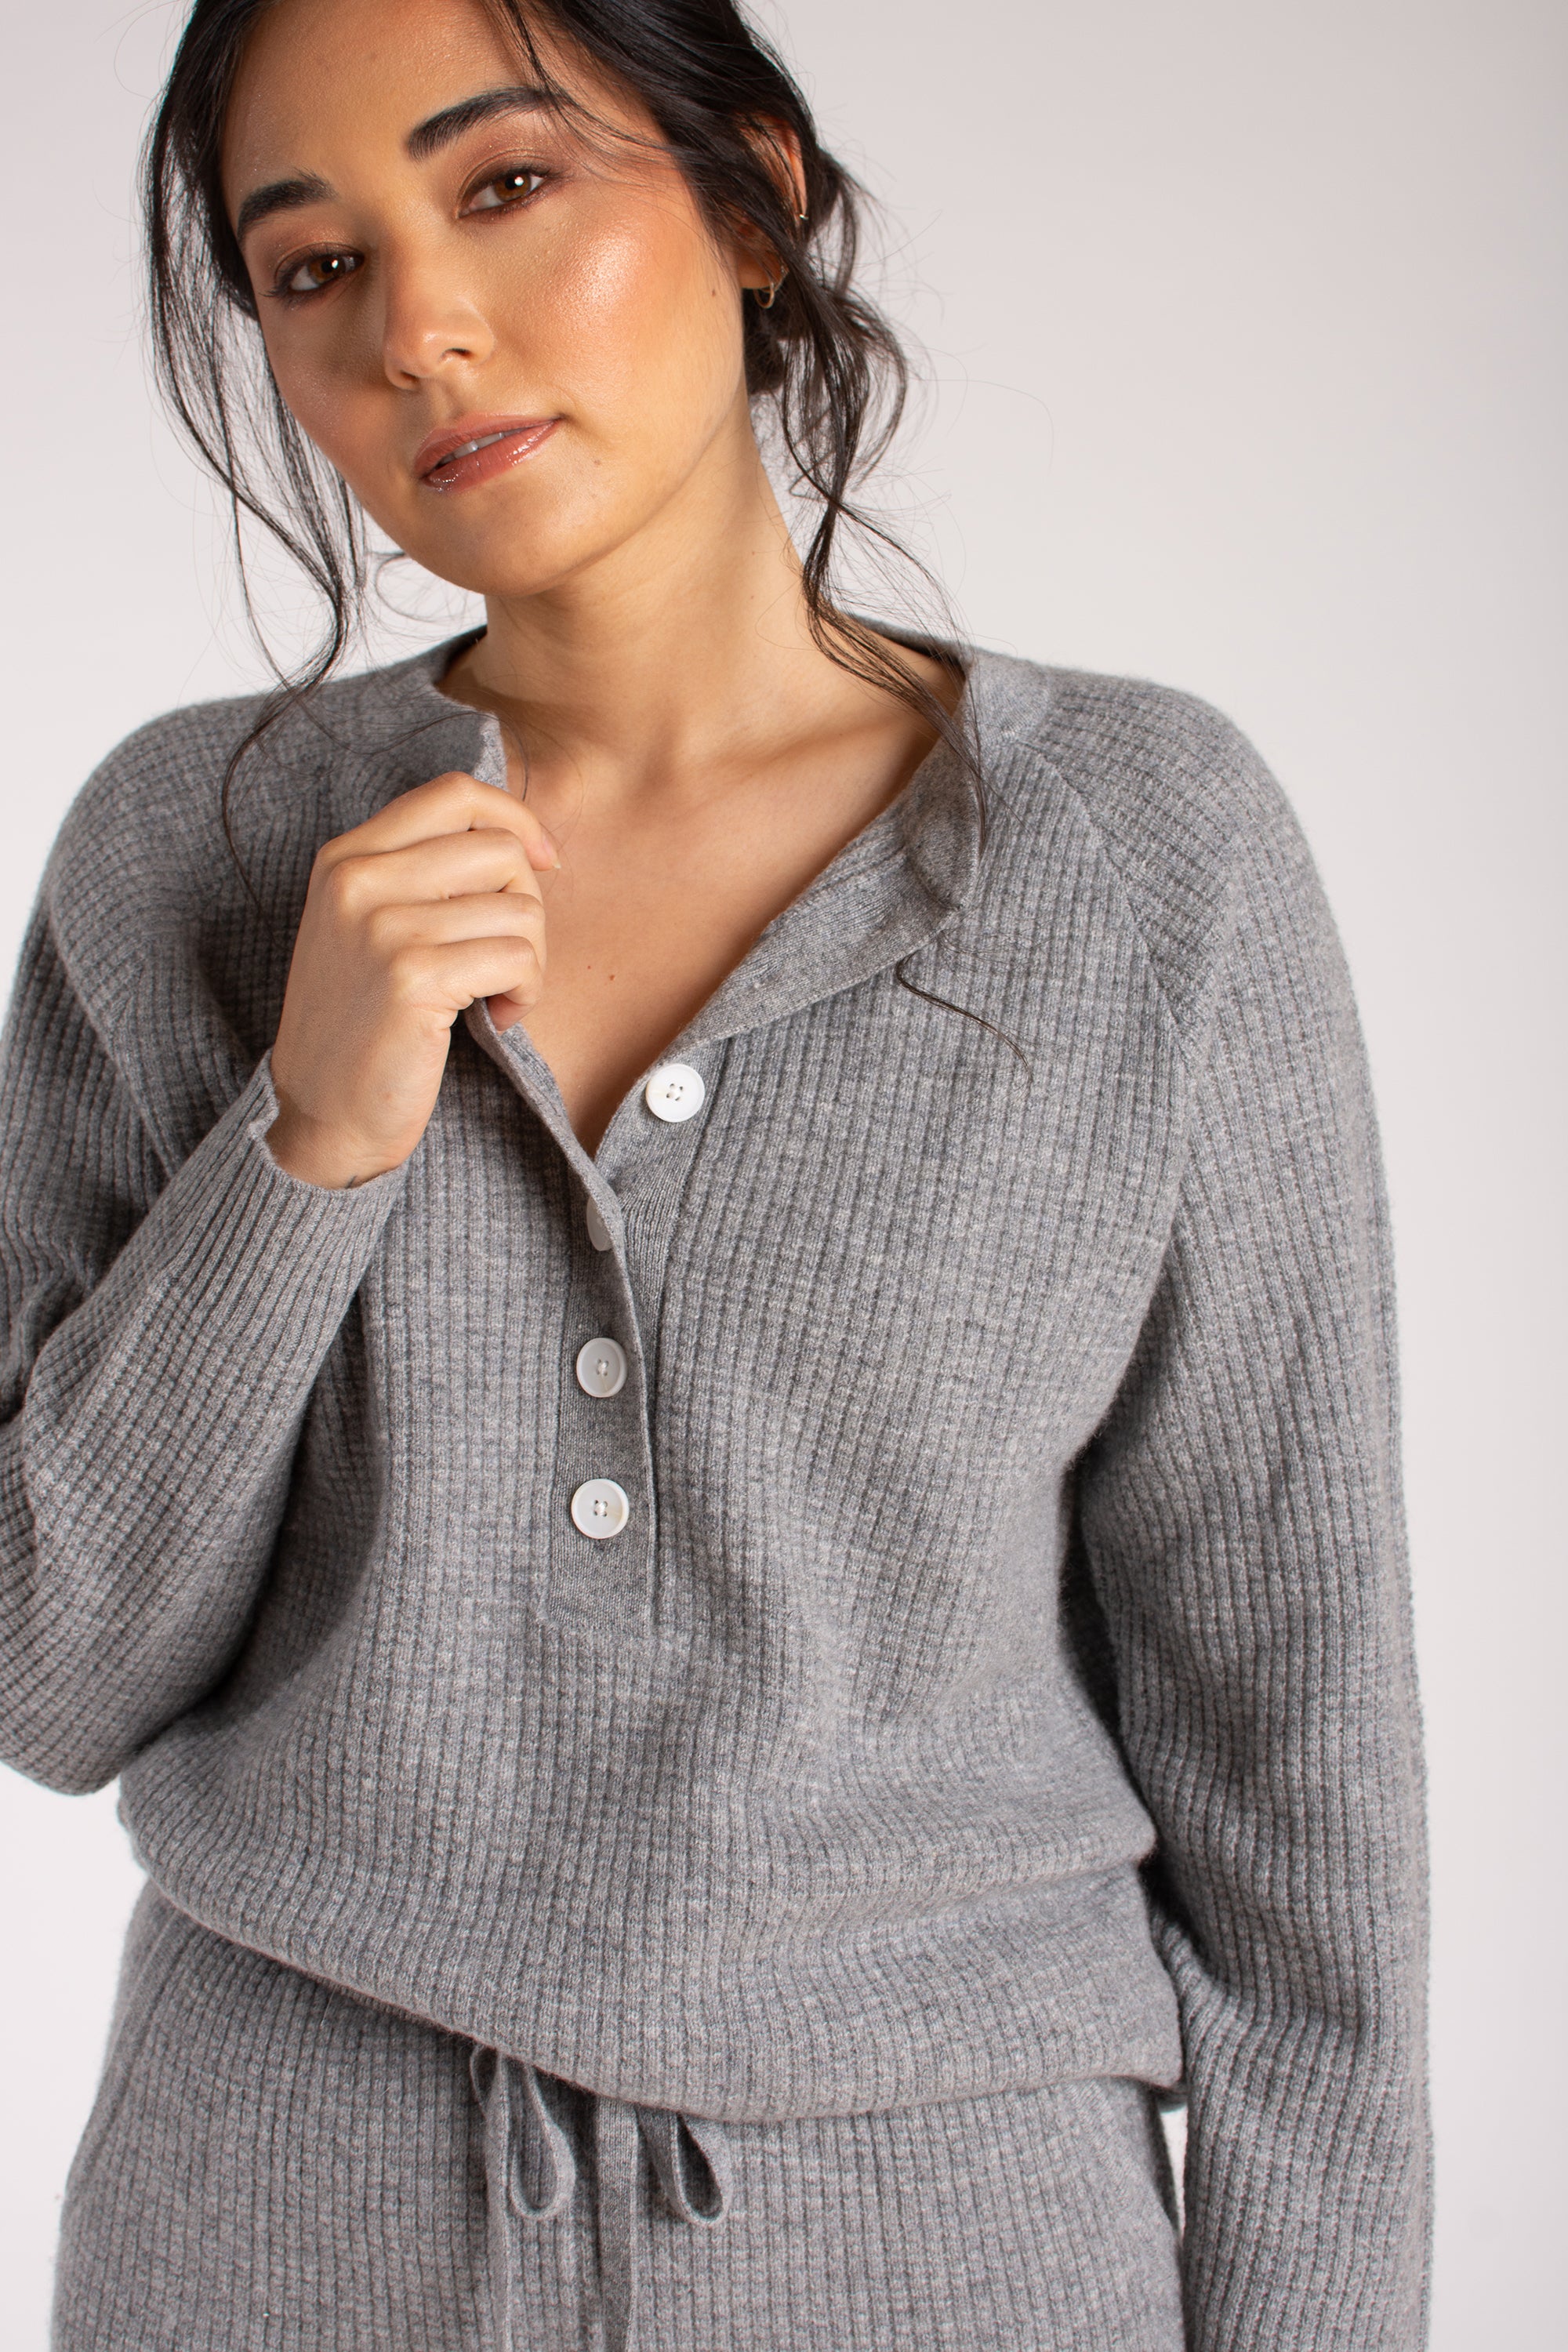 Karen Thomas- Sustainable Fashion - Cashmere Sweatsuit Two Piece Set –  Karen Thomas